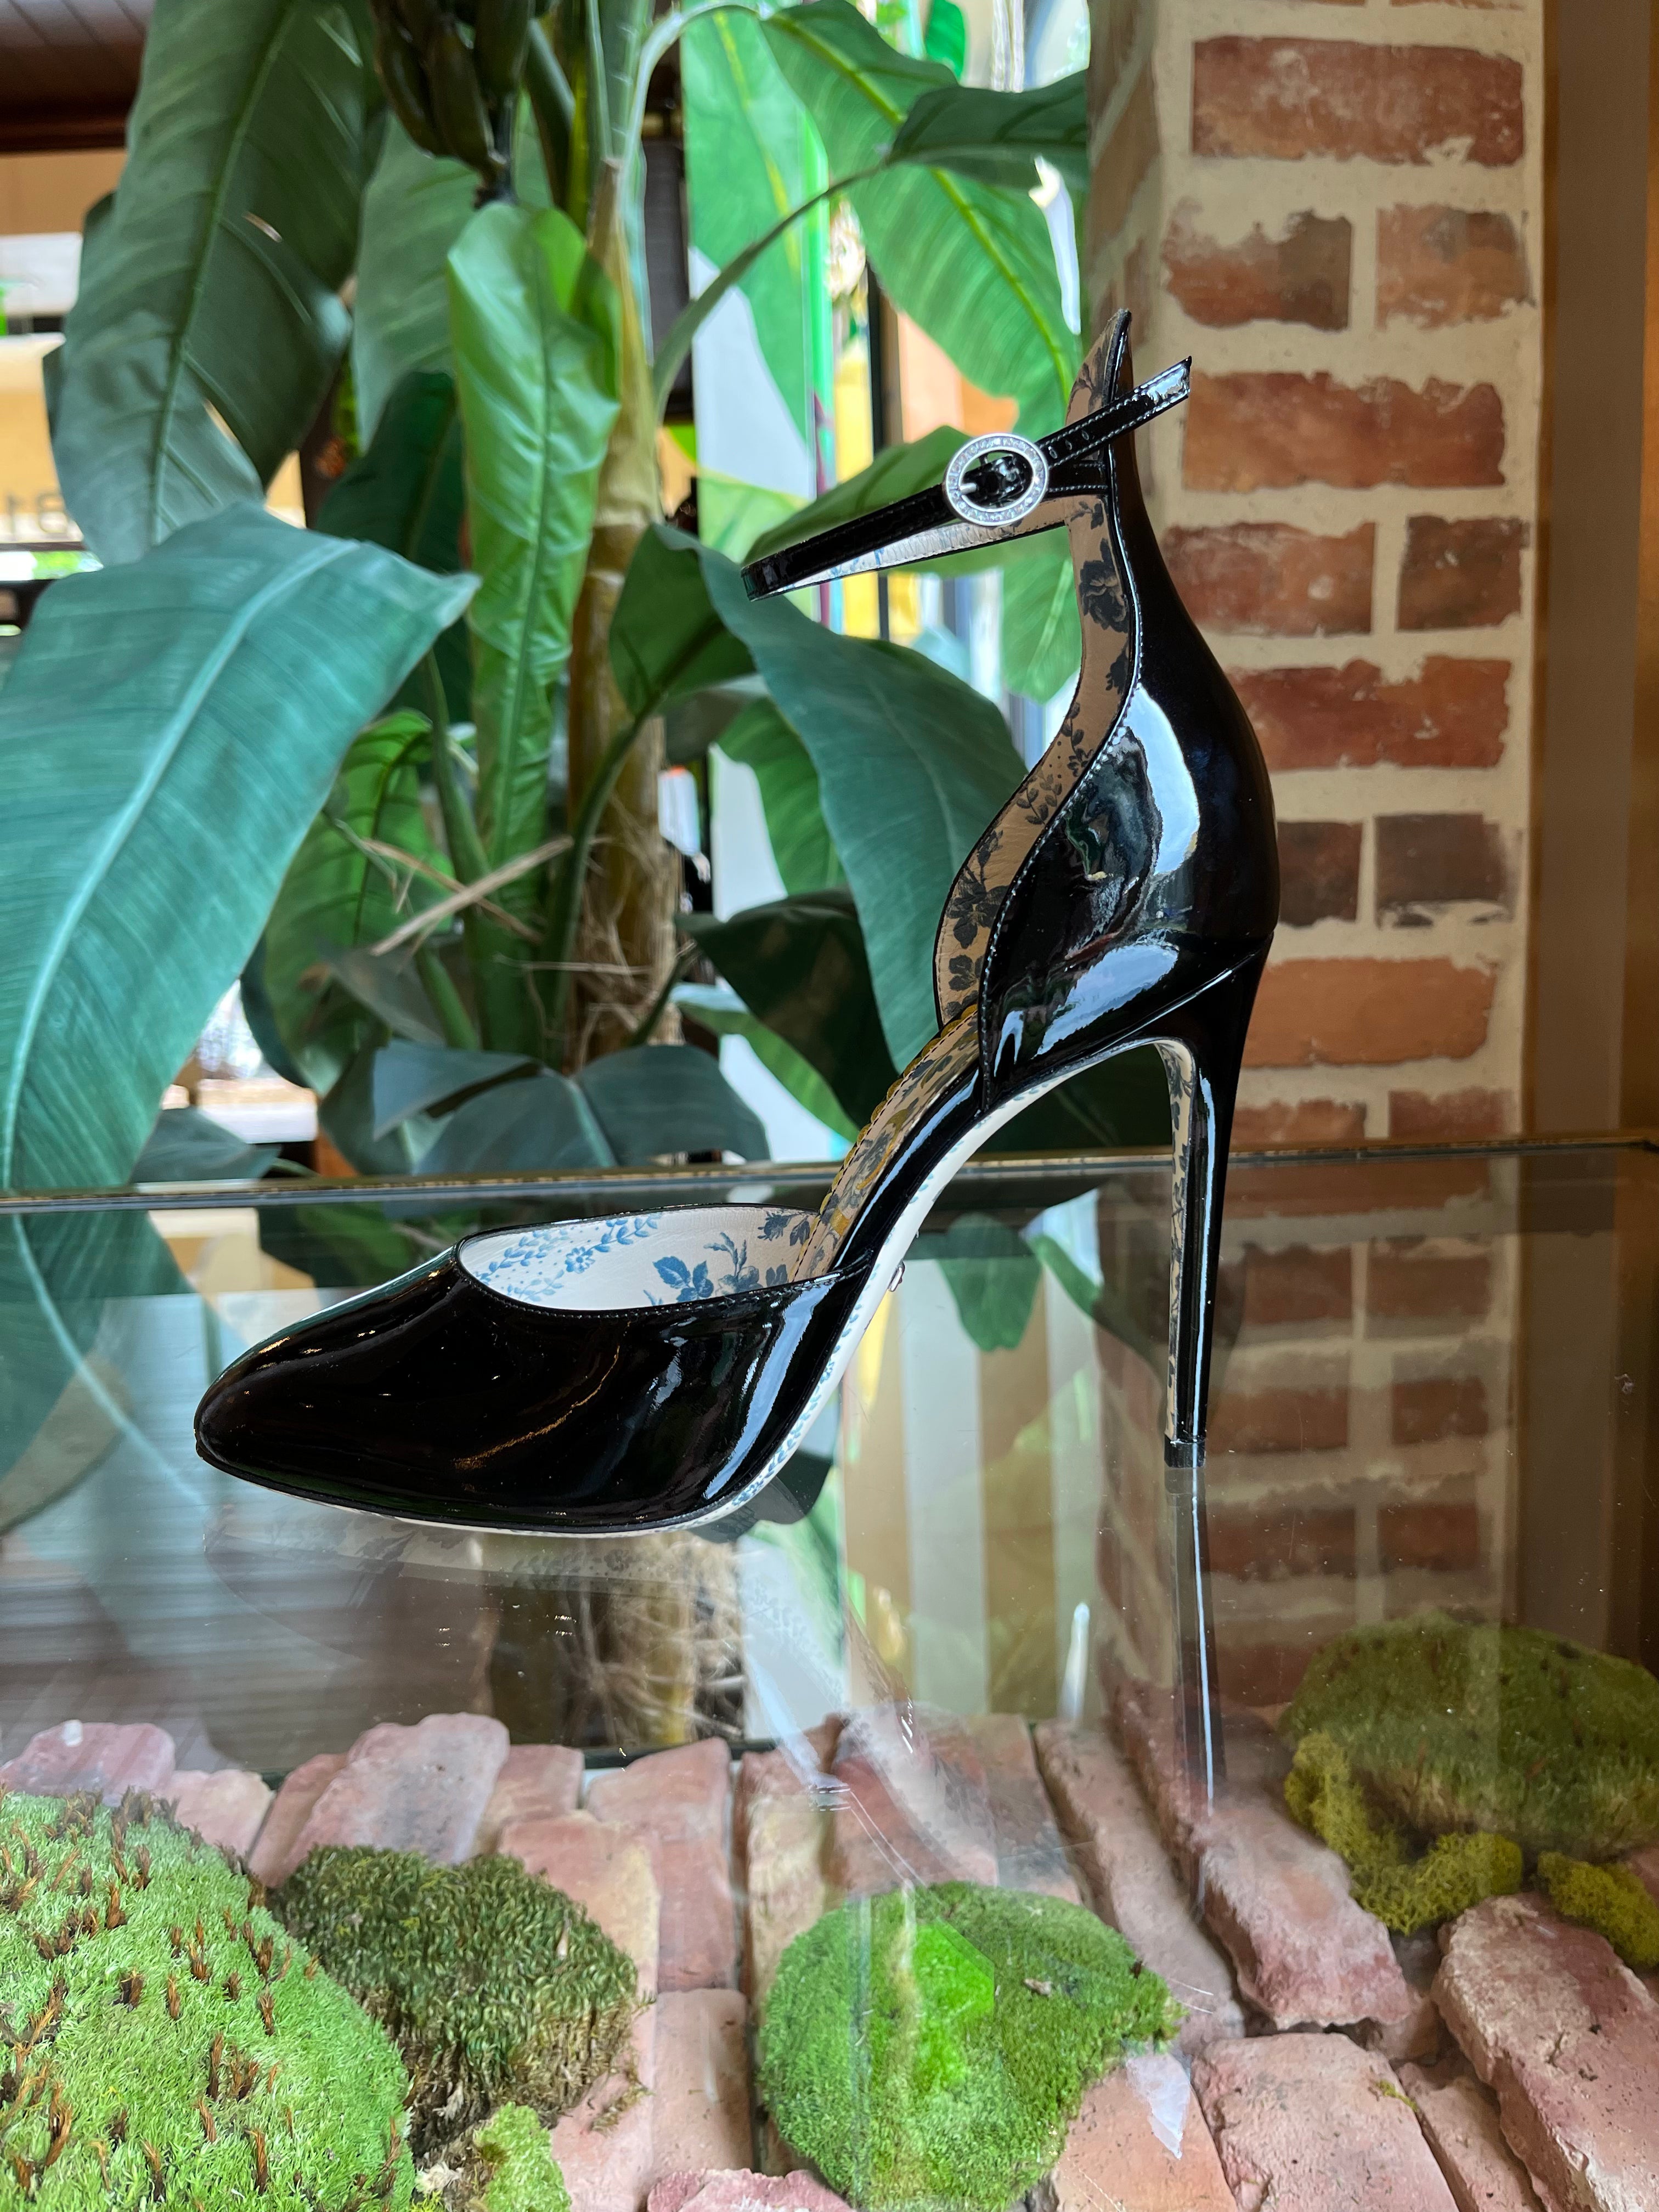 Louis Vuitton Burgundy/Black Patent Leather Ankle Strap Platform Pumps Size 39.5